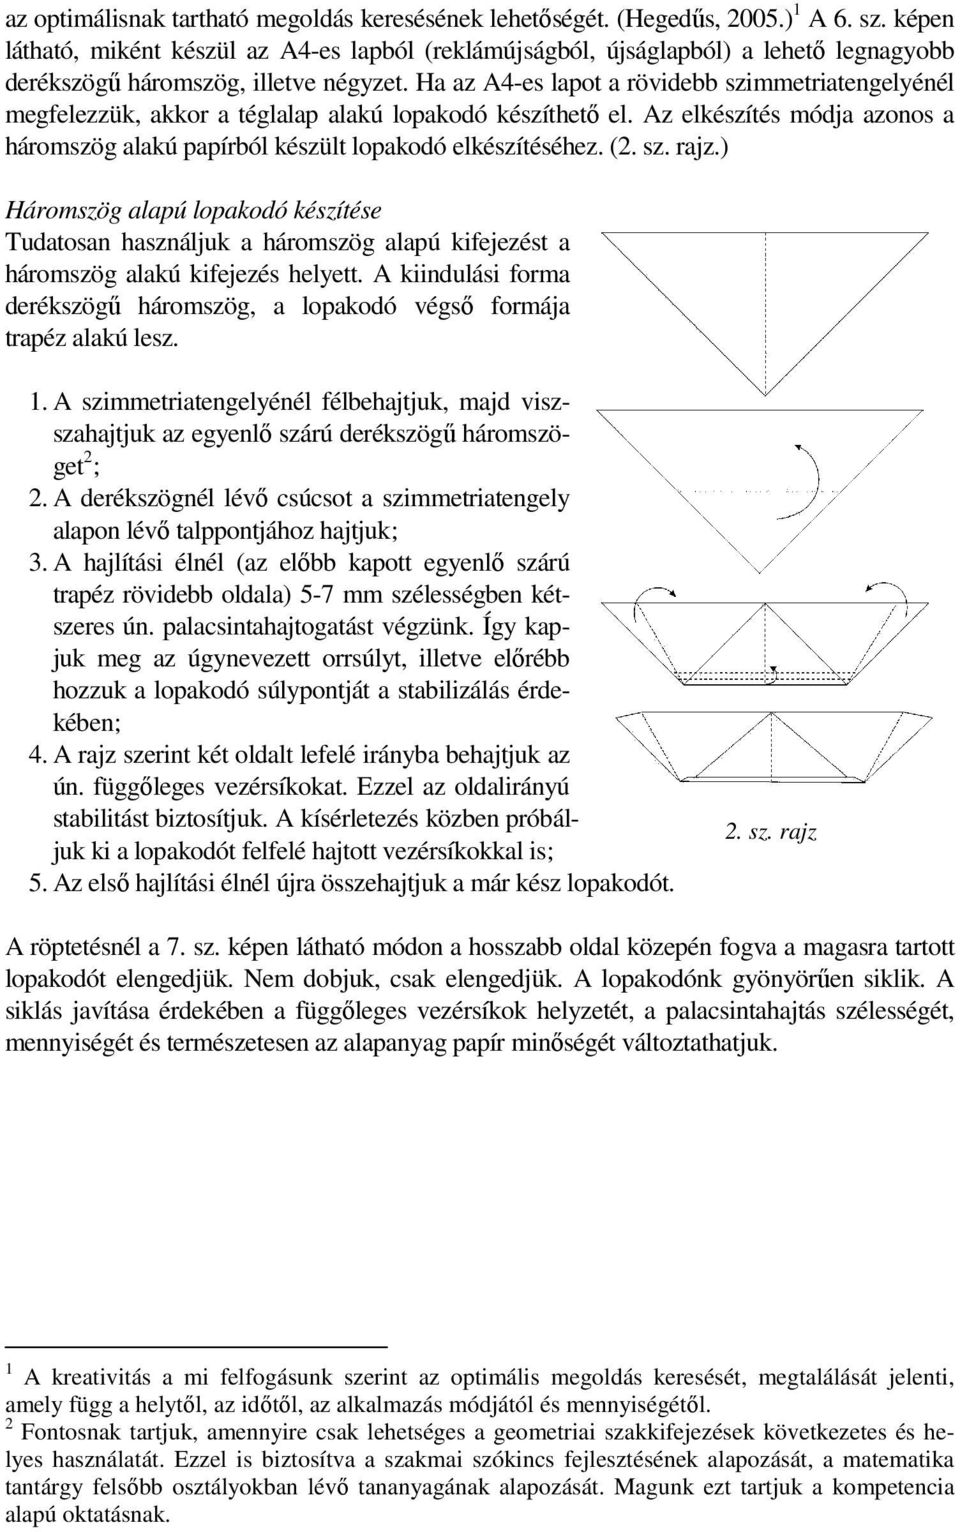 Ha az A4-es lapot a rövidebb szimmetriatengelyénél megfelezzük, akkor a téglalap alakú lopakodó készíthetı el. Az elkészítés módja azonos a háromszög alakú papírból készült lopakodó elkészítéséhez.